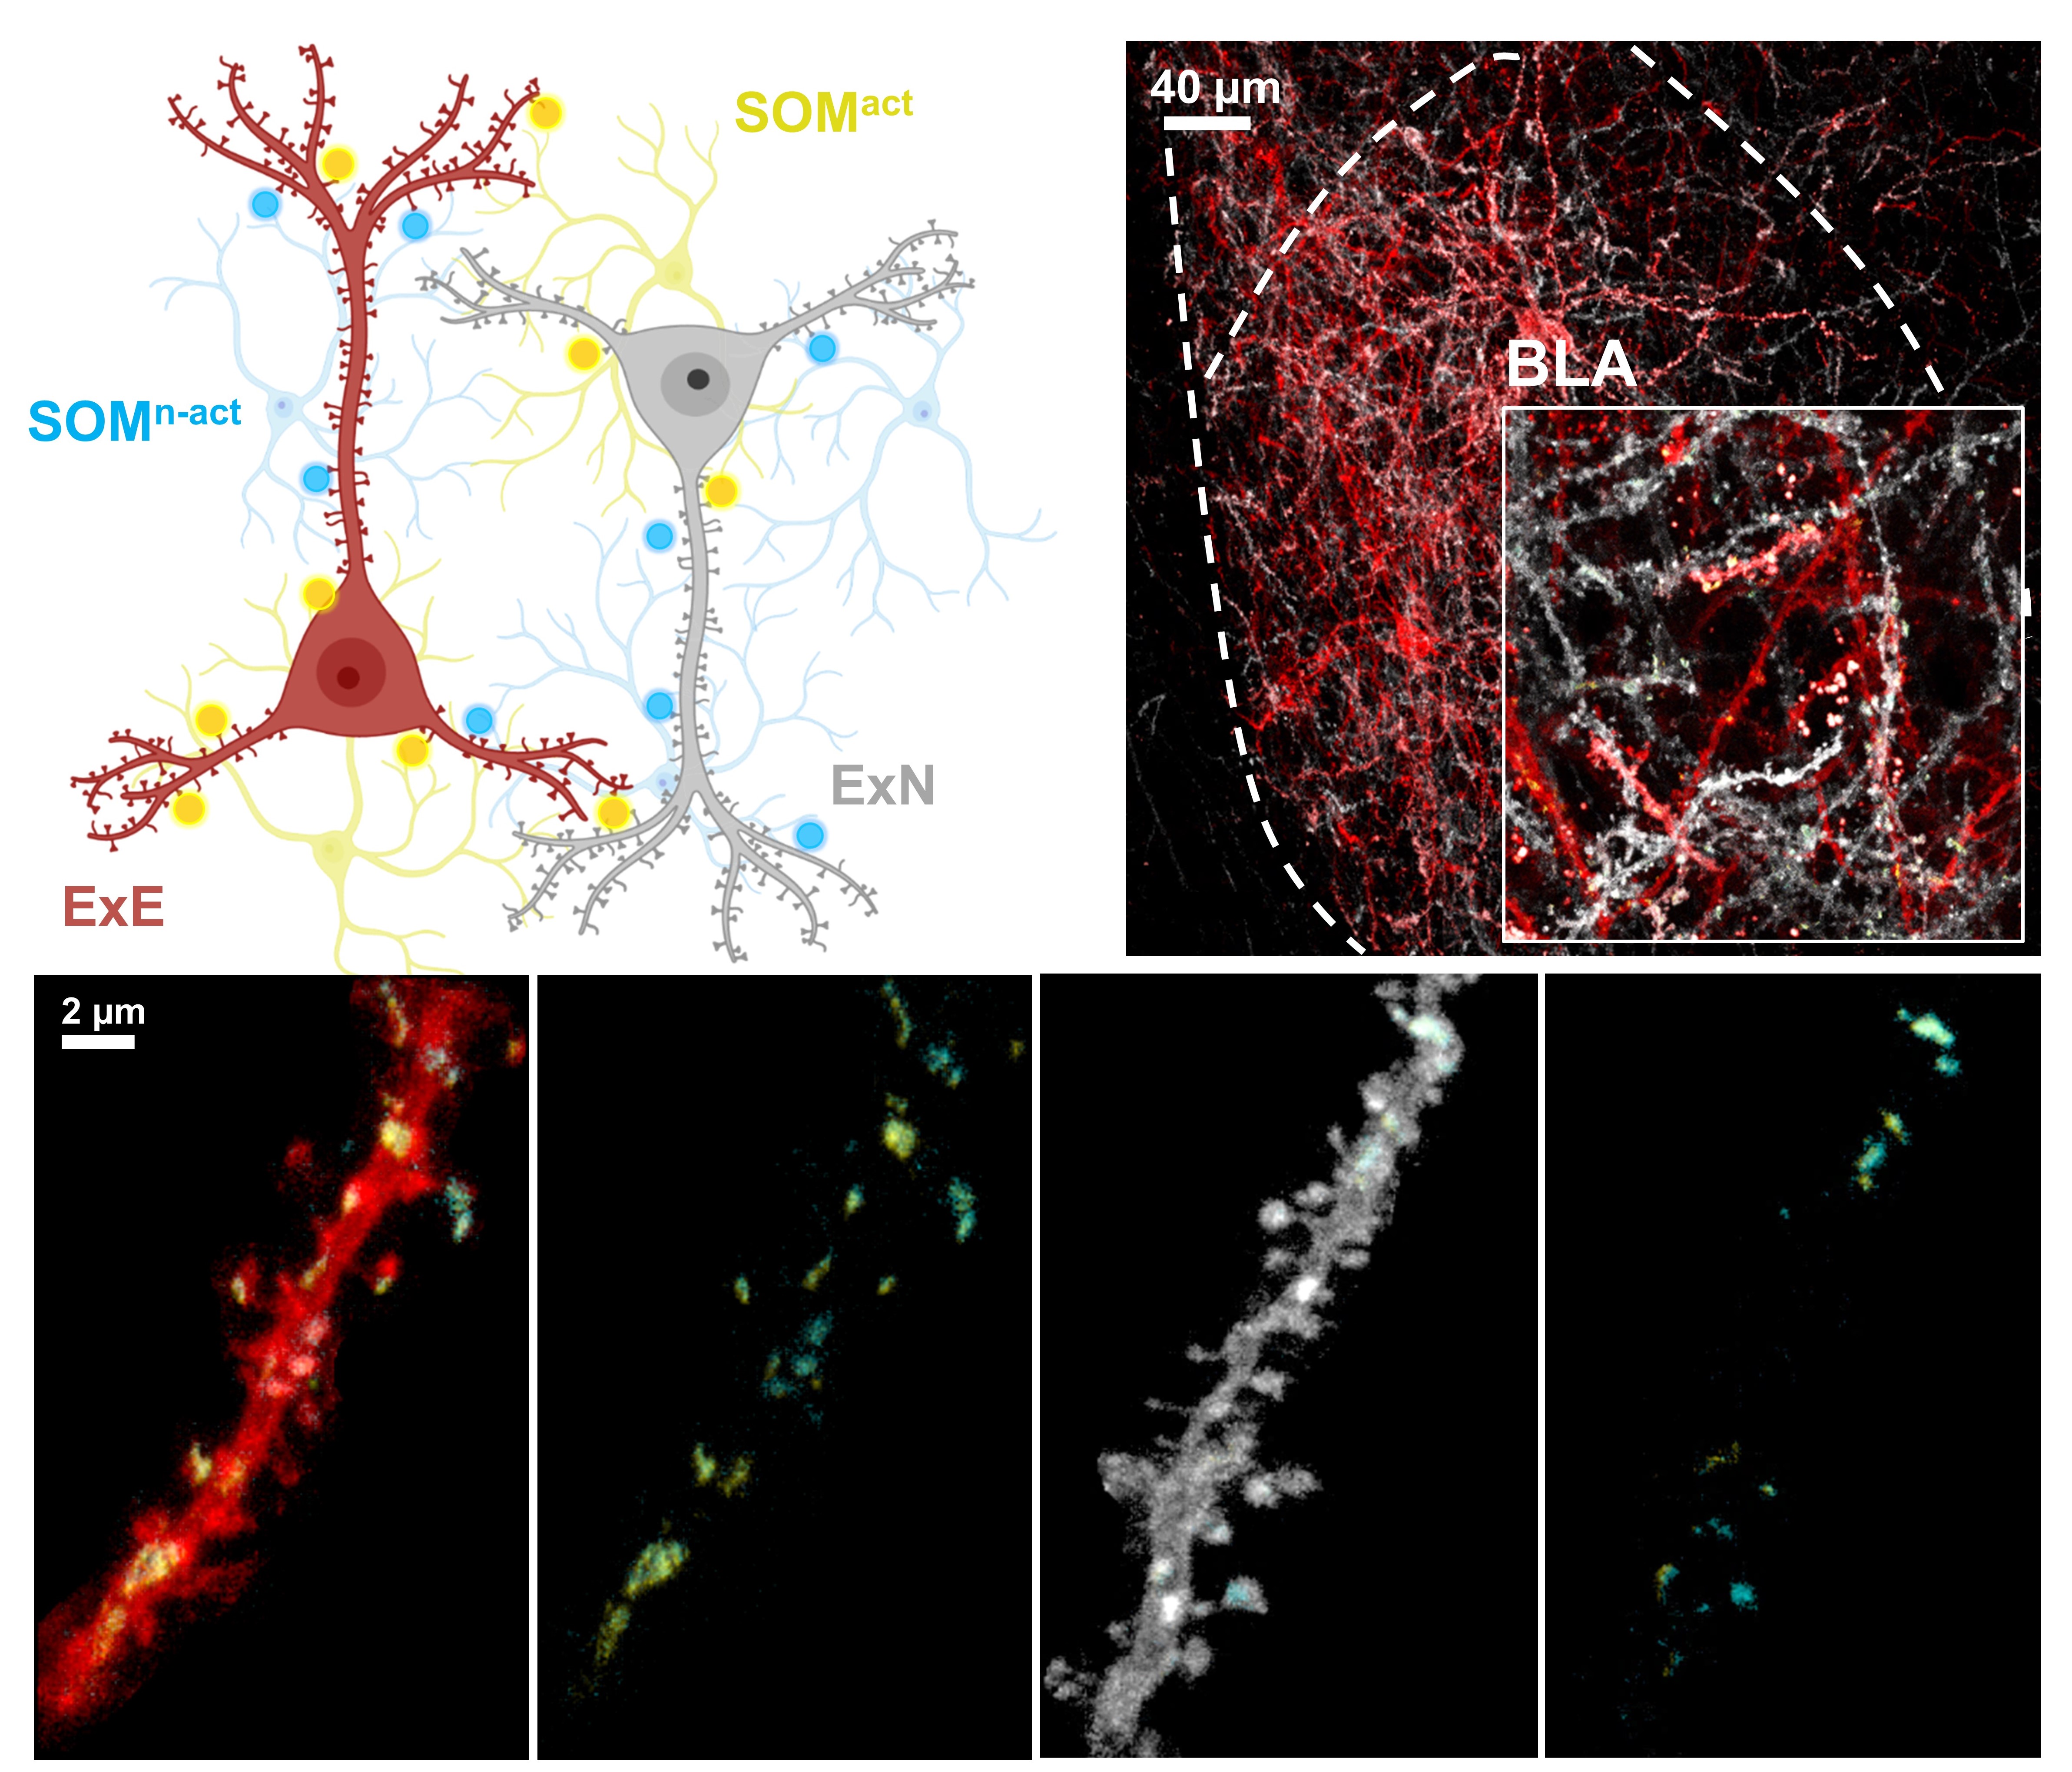 [그림] 기저외측편도체 내의 시냅스 표지
            LCD-eGRASP 기술을 이용한 기저외측편도체 내 인접한 뉴런 간 연결 시냅스 표지하여 기억저장세포(붉은색), 비기억저장세포(흰색), 활성화된 억제성 뉴런의 시냅스 연결(노란색), 활성화되지 않은 억제성 뉴런의 시냅스 연결(청록색)을 확인할 수 있다.